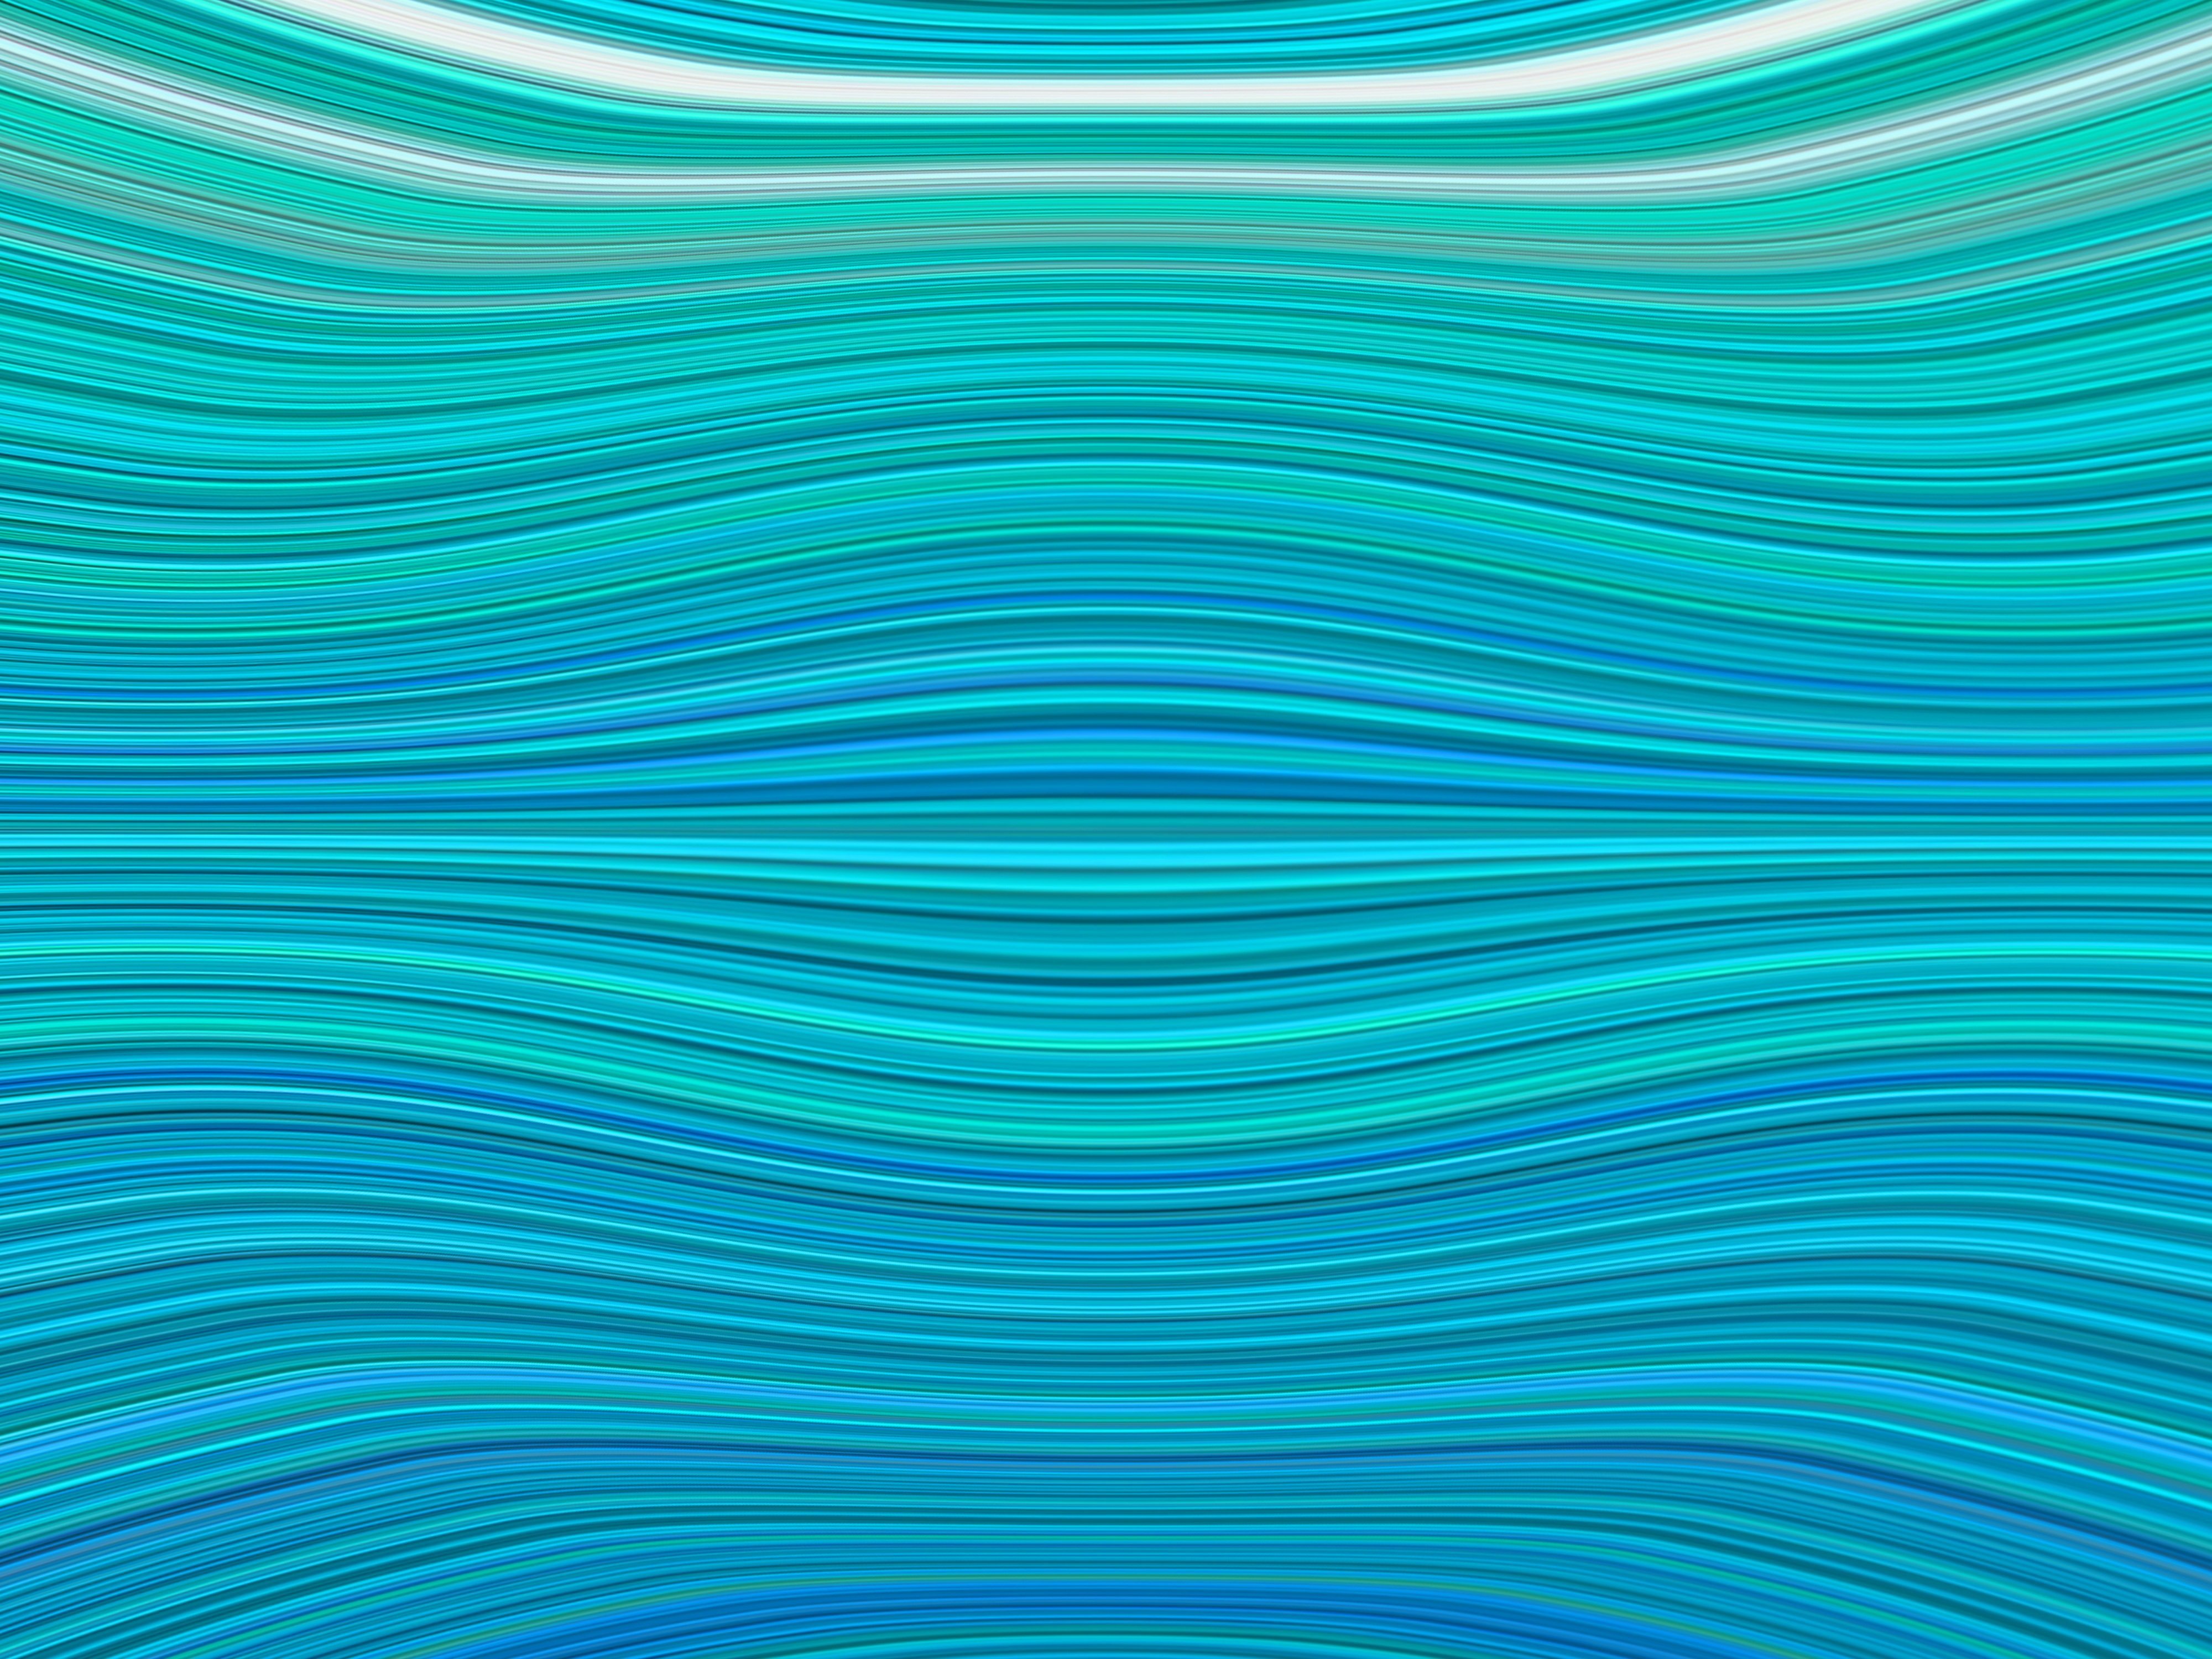 Цвет морской волны фон - 59 фото